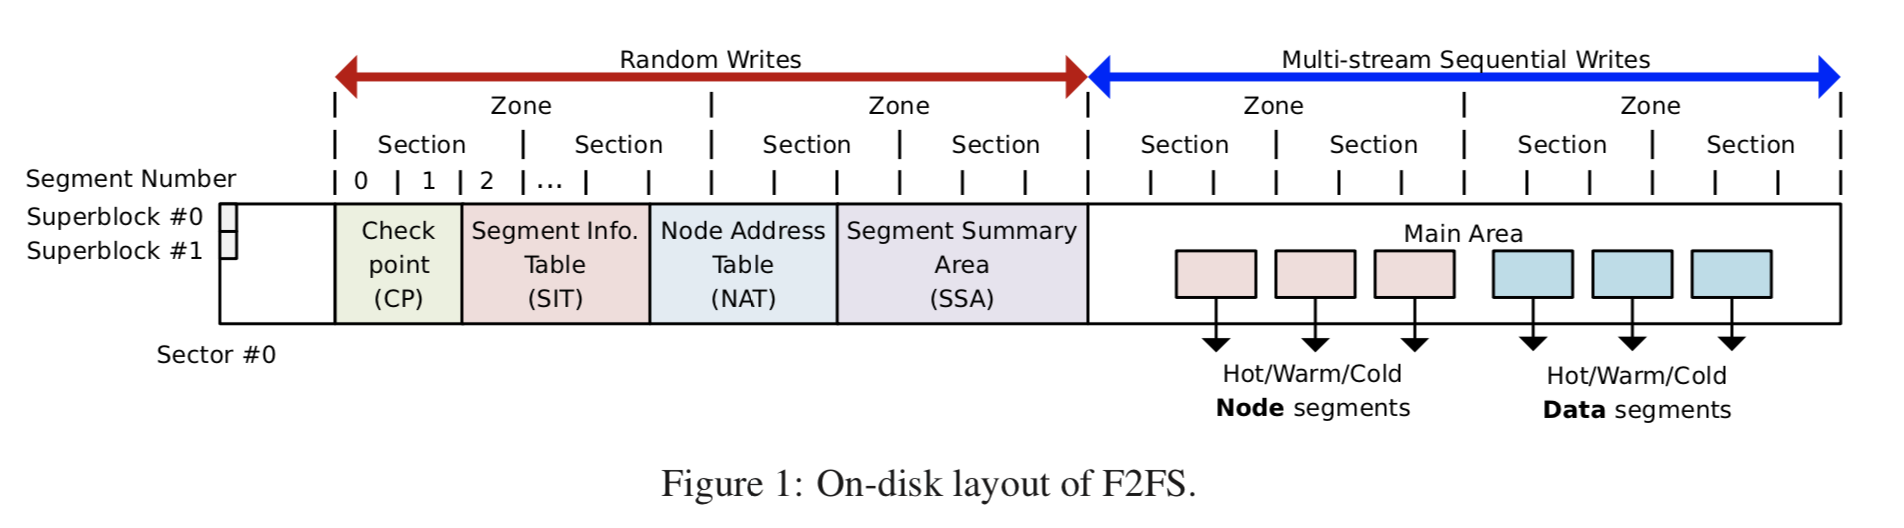 f2fs-layout